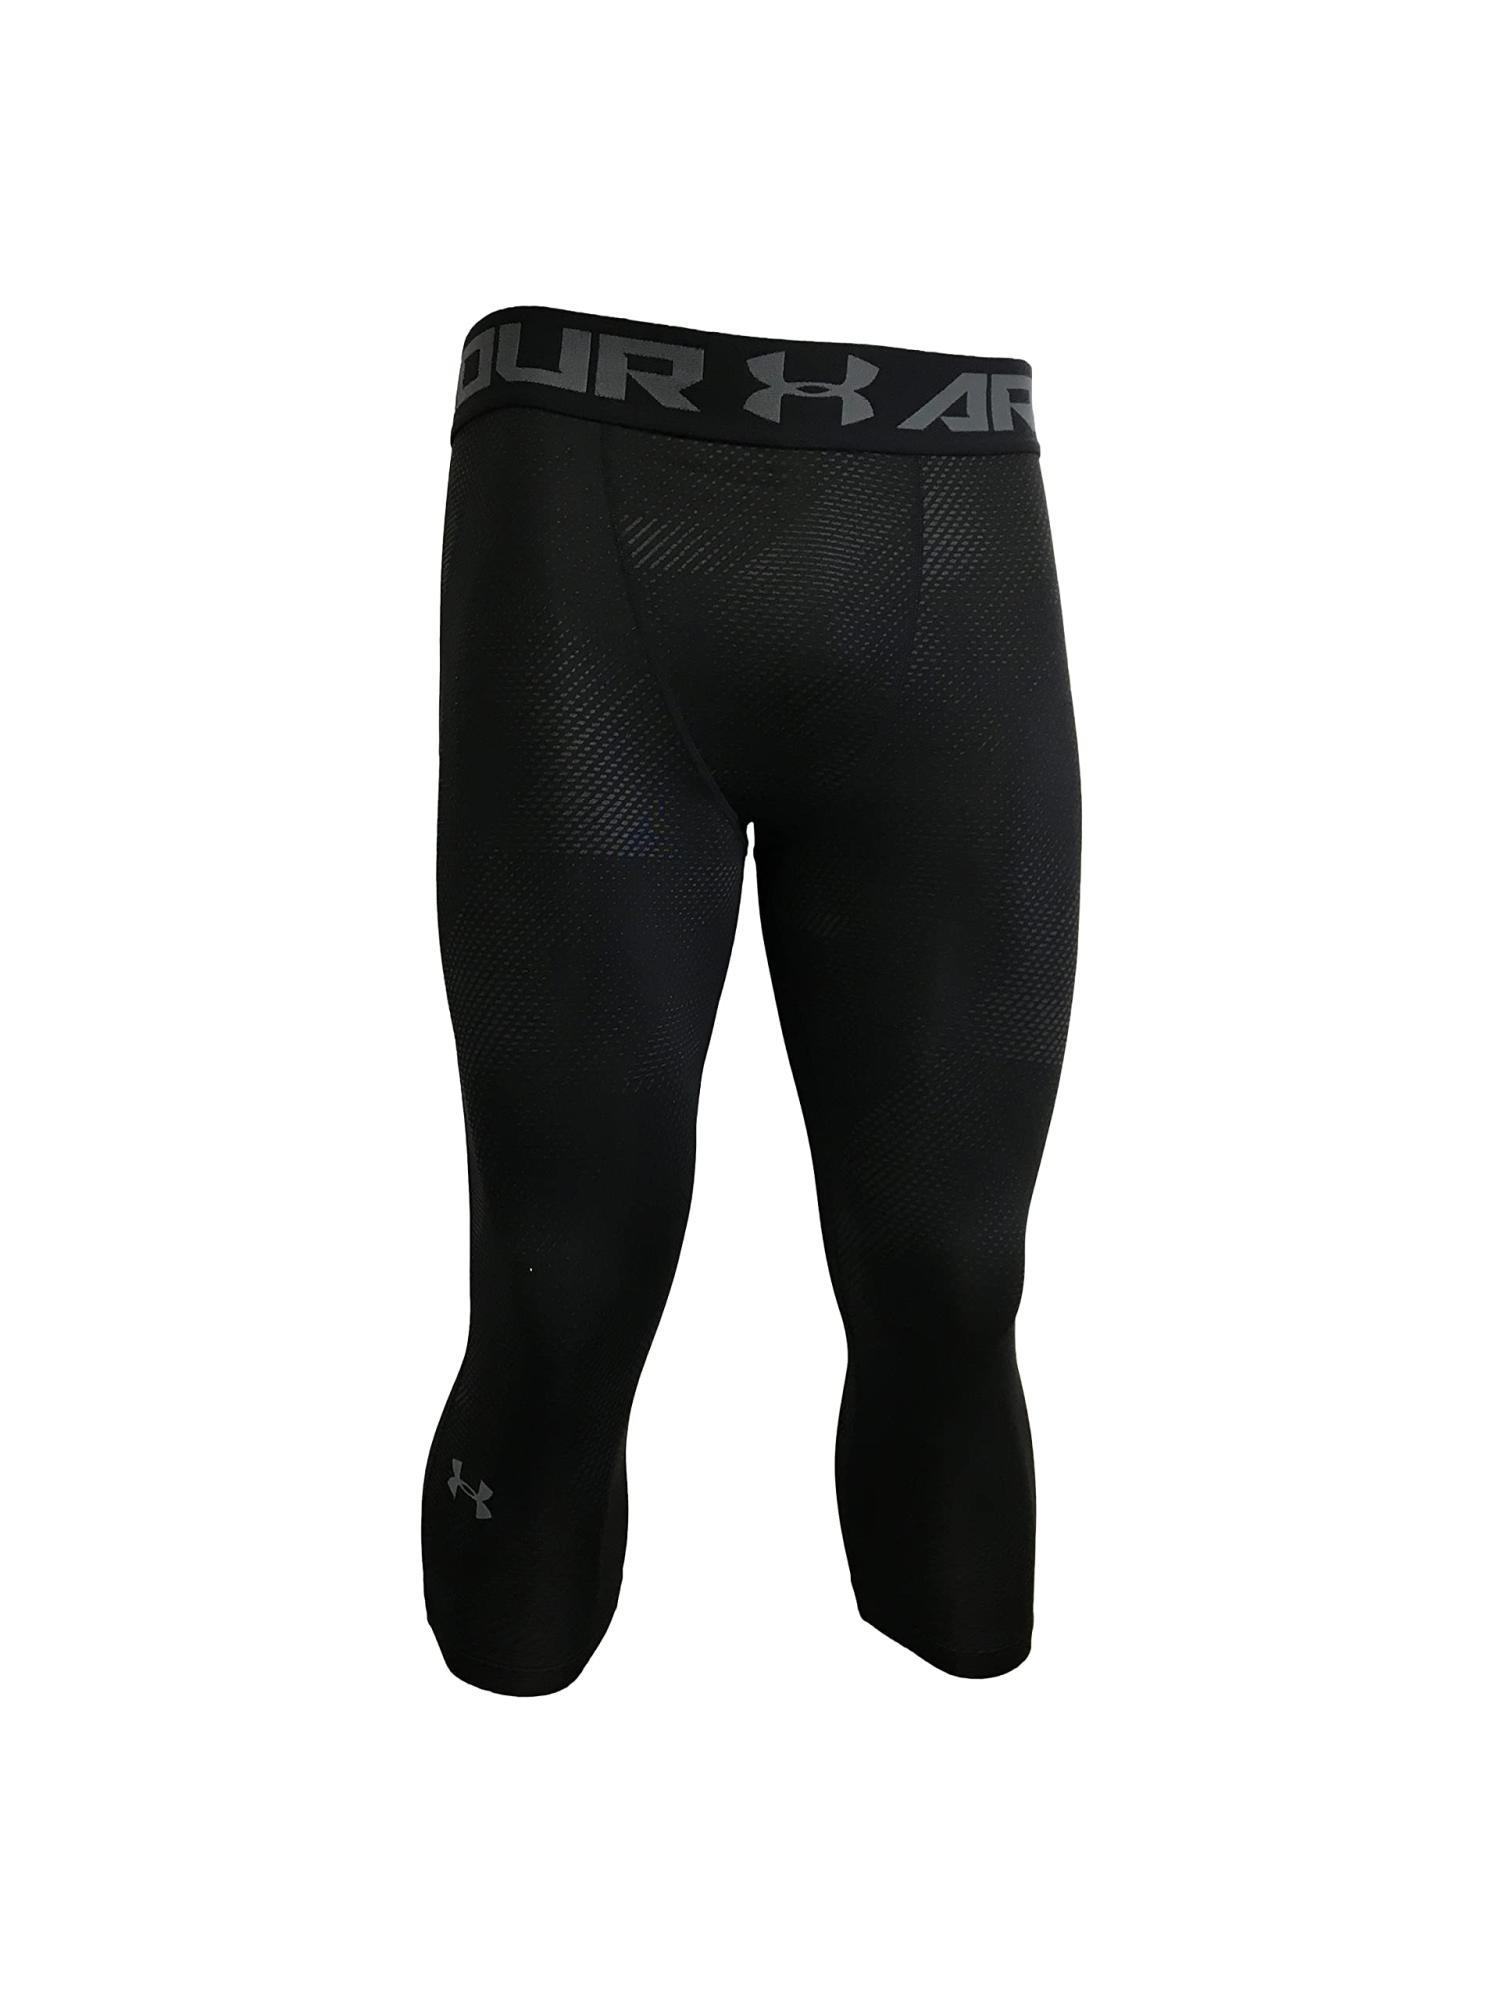 Under Armour Men's Leggings Polyester/Elastane Blend 1357362 Black (X-Large)